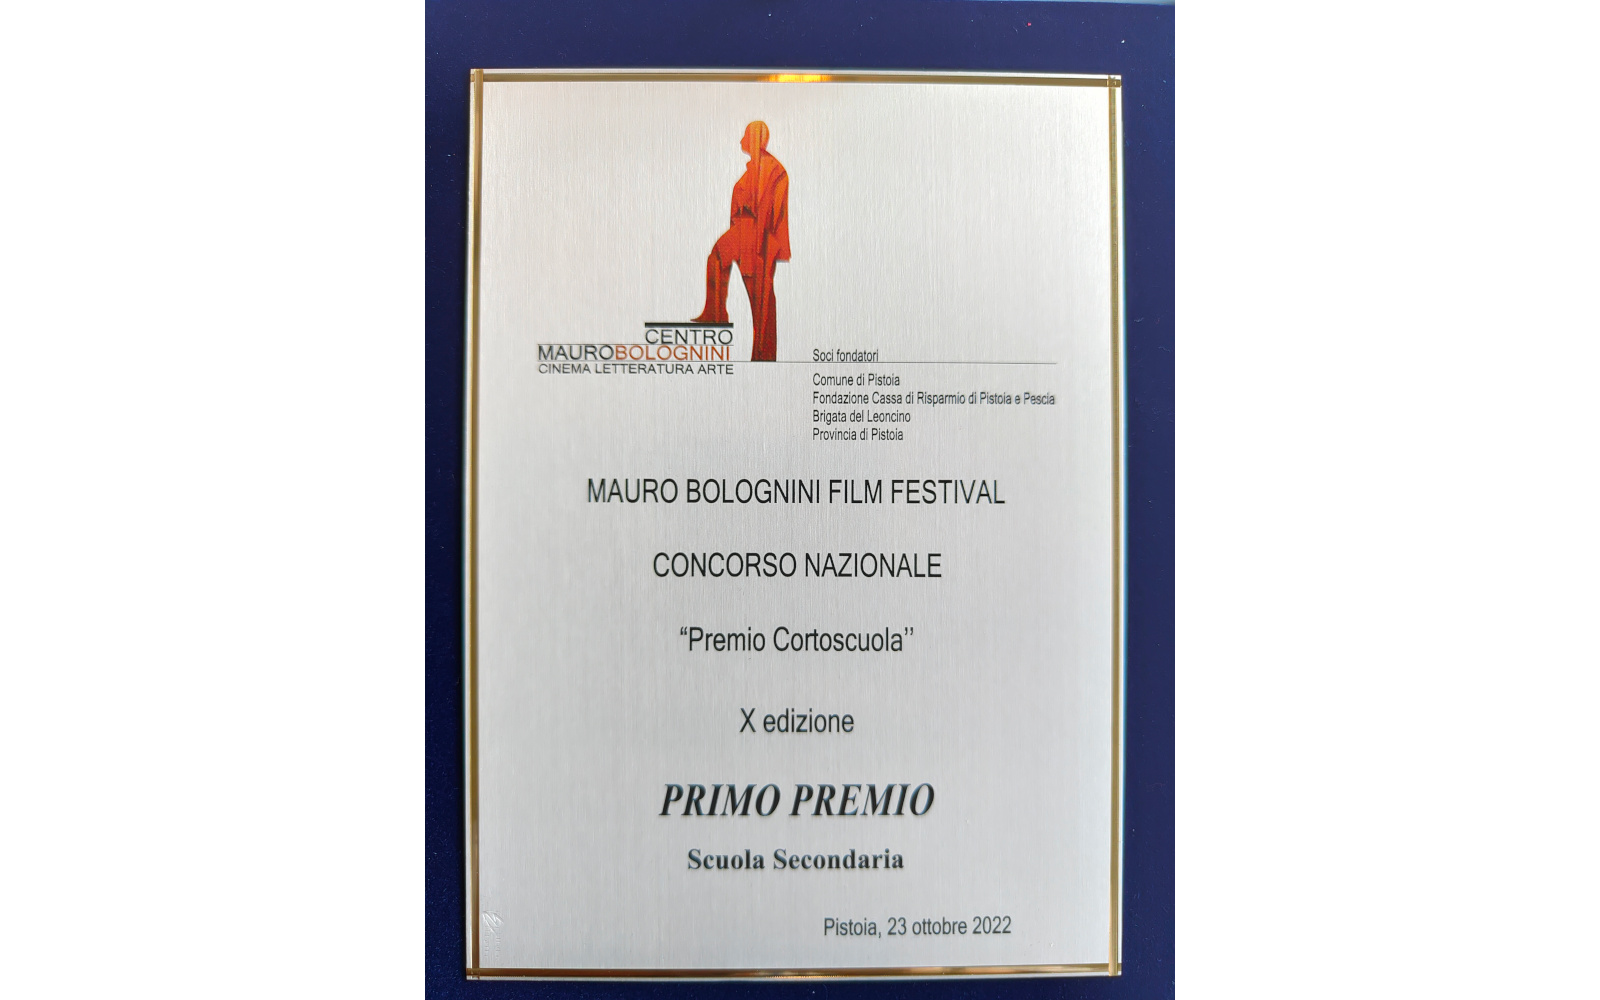 X EDIZIONE del Mauro Bolognini Film Festival 2022